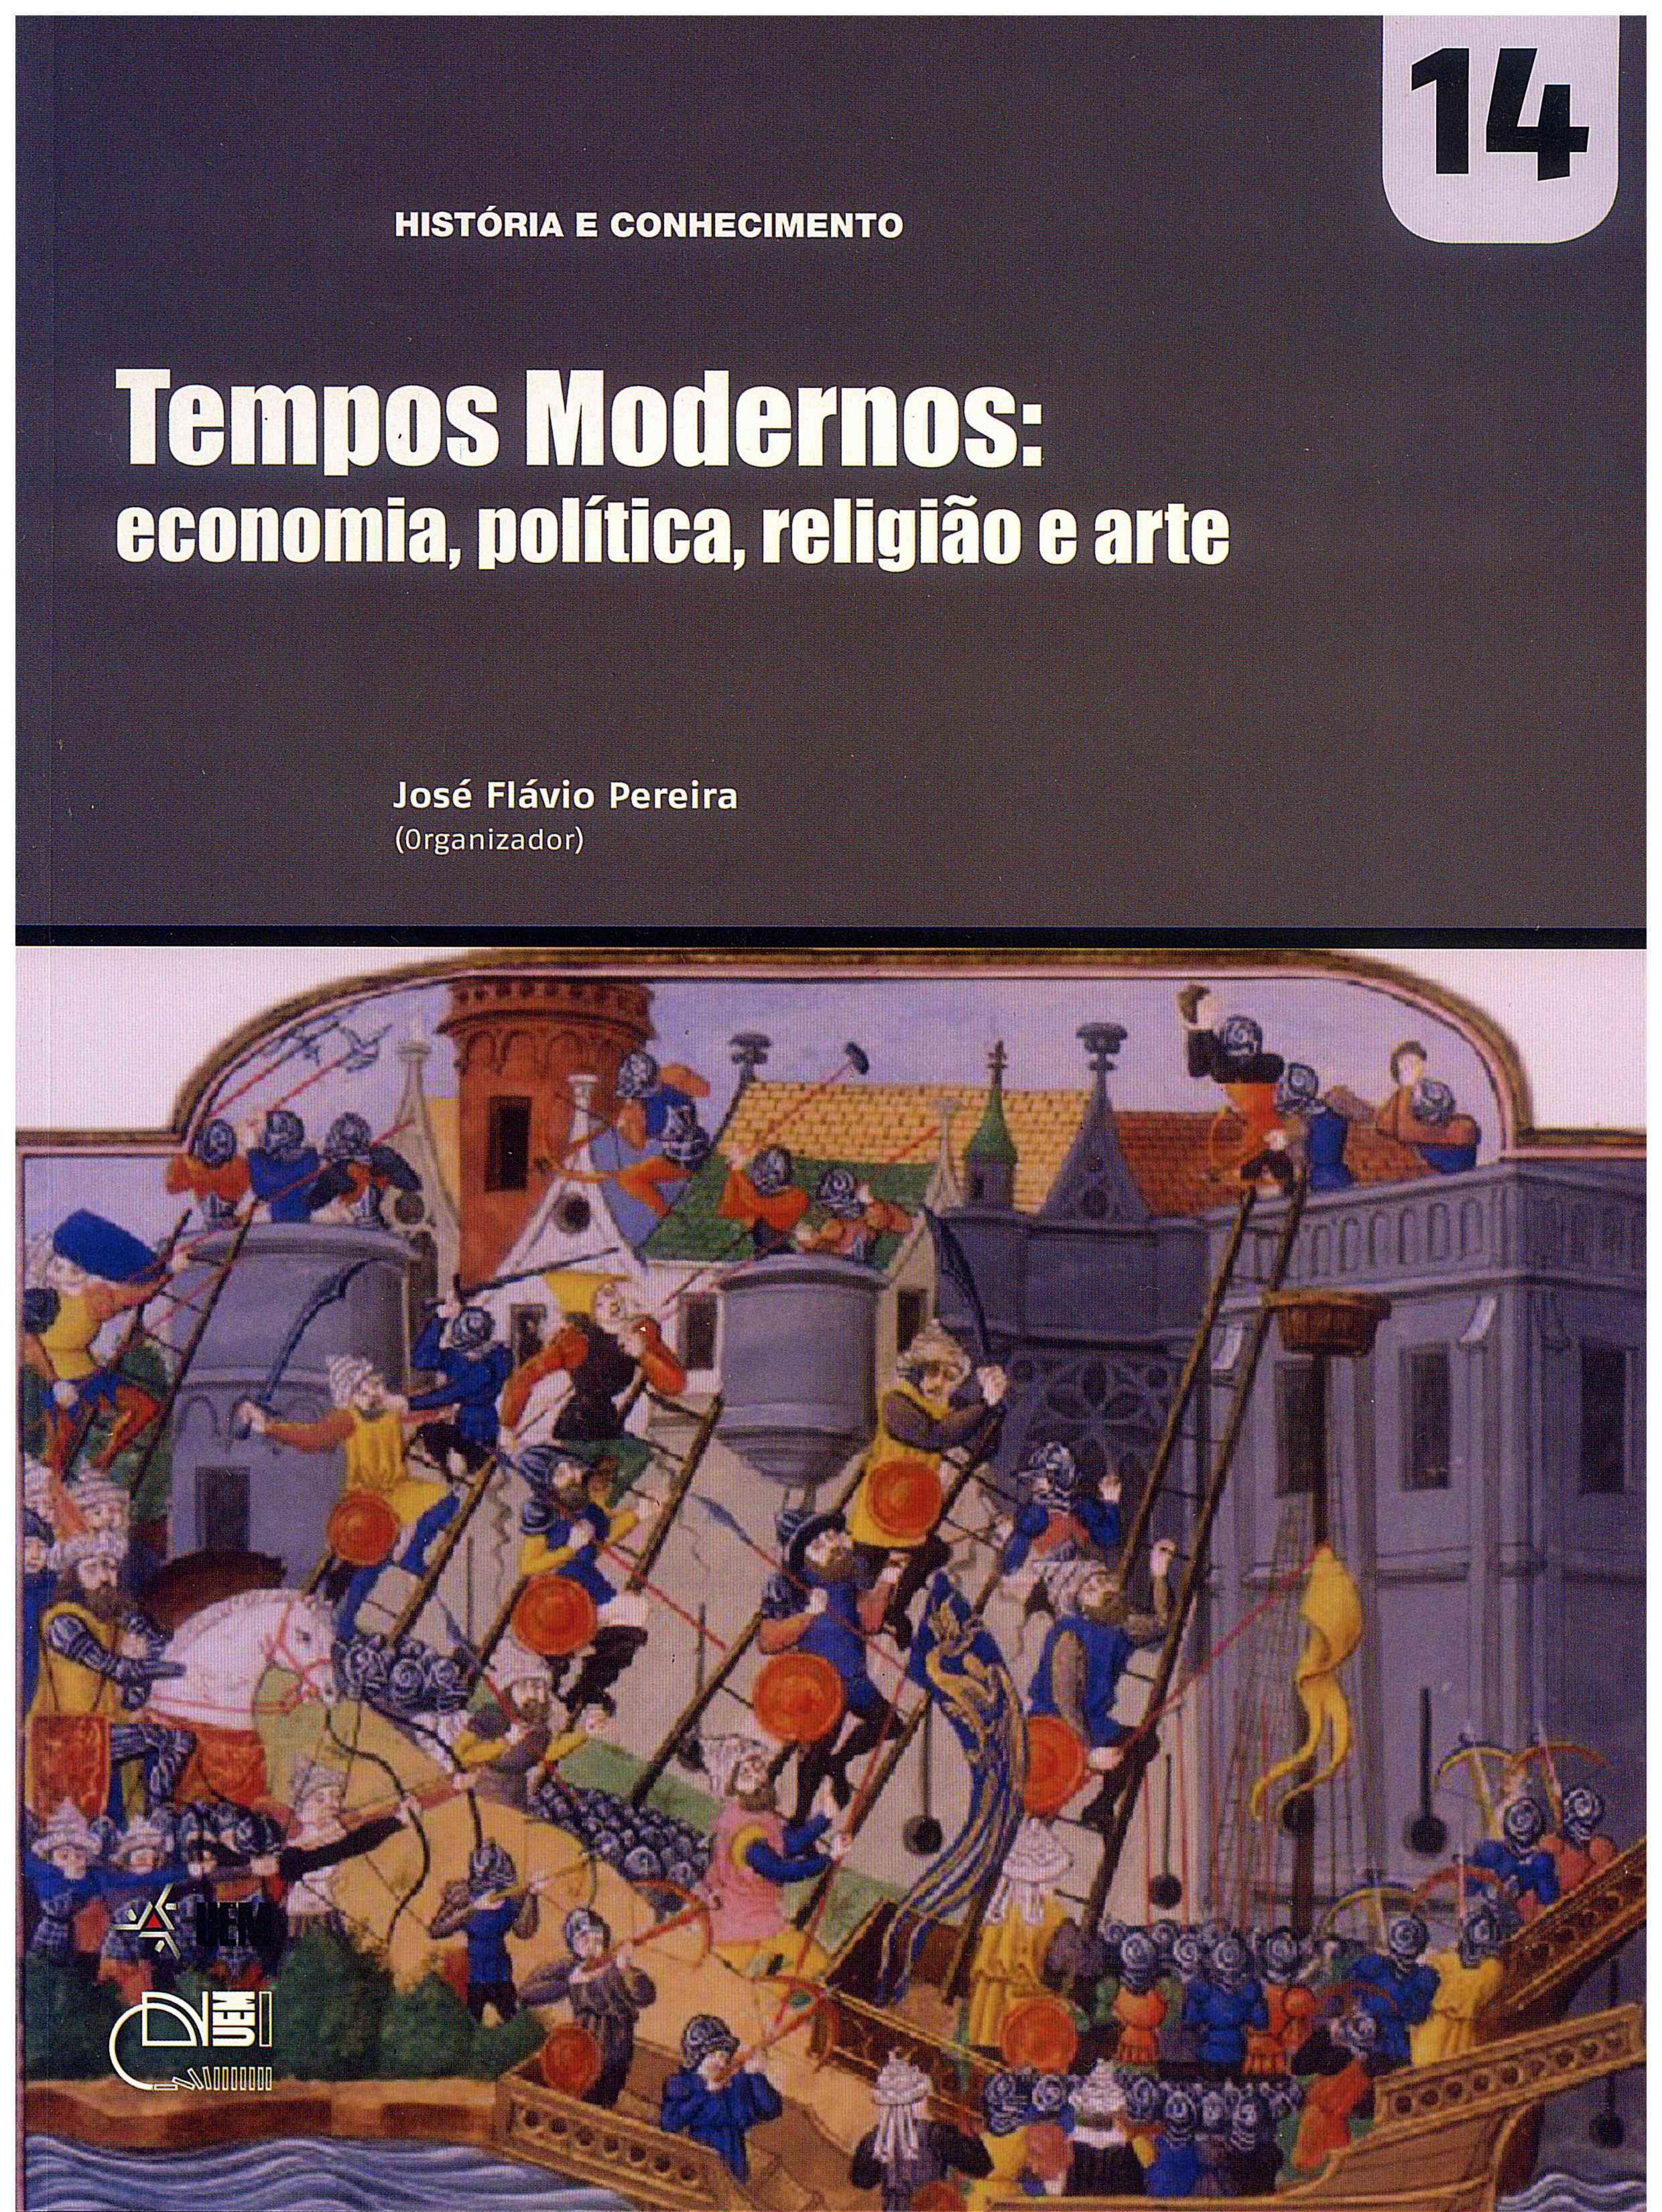 PEREIRA, J. F. (Org.). Tempos Modernos: economia, política, religião e arte